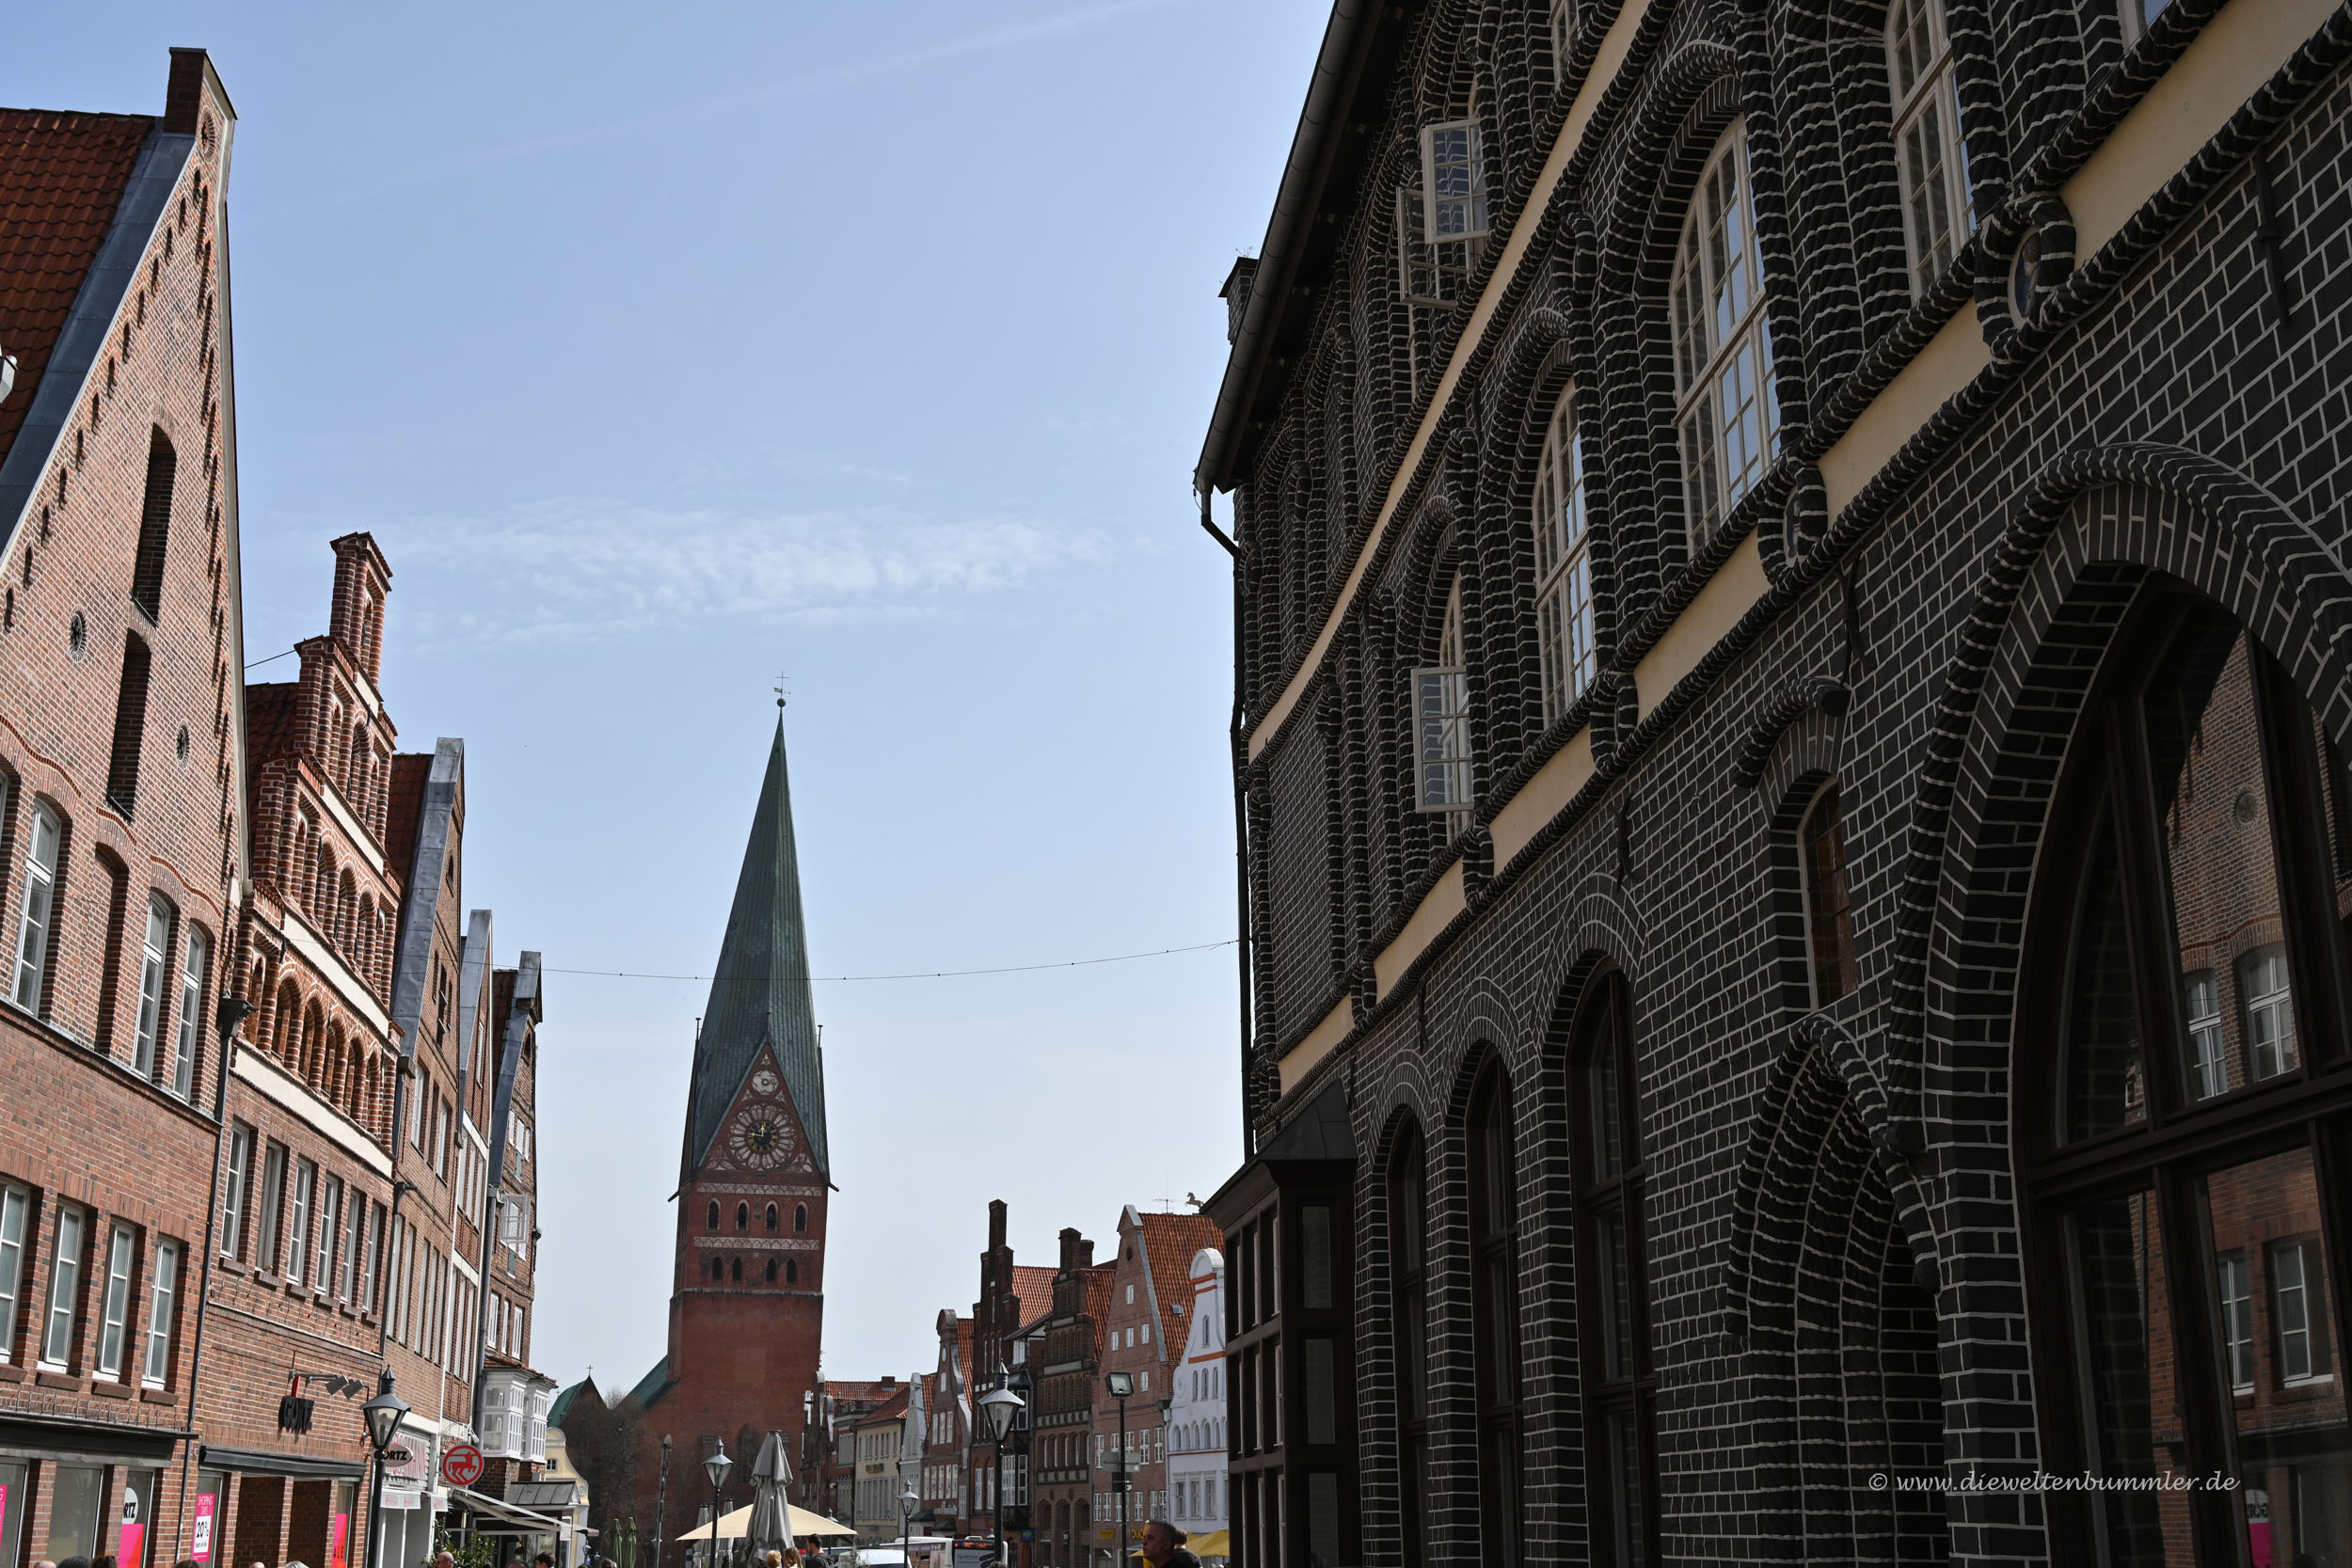 Lüneburgs Altstadt